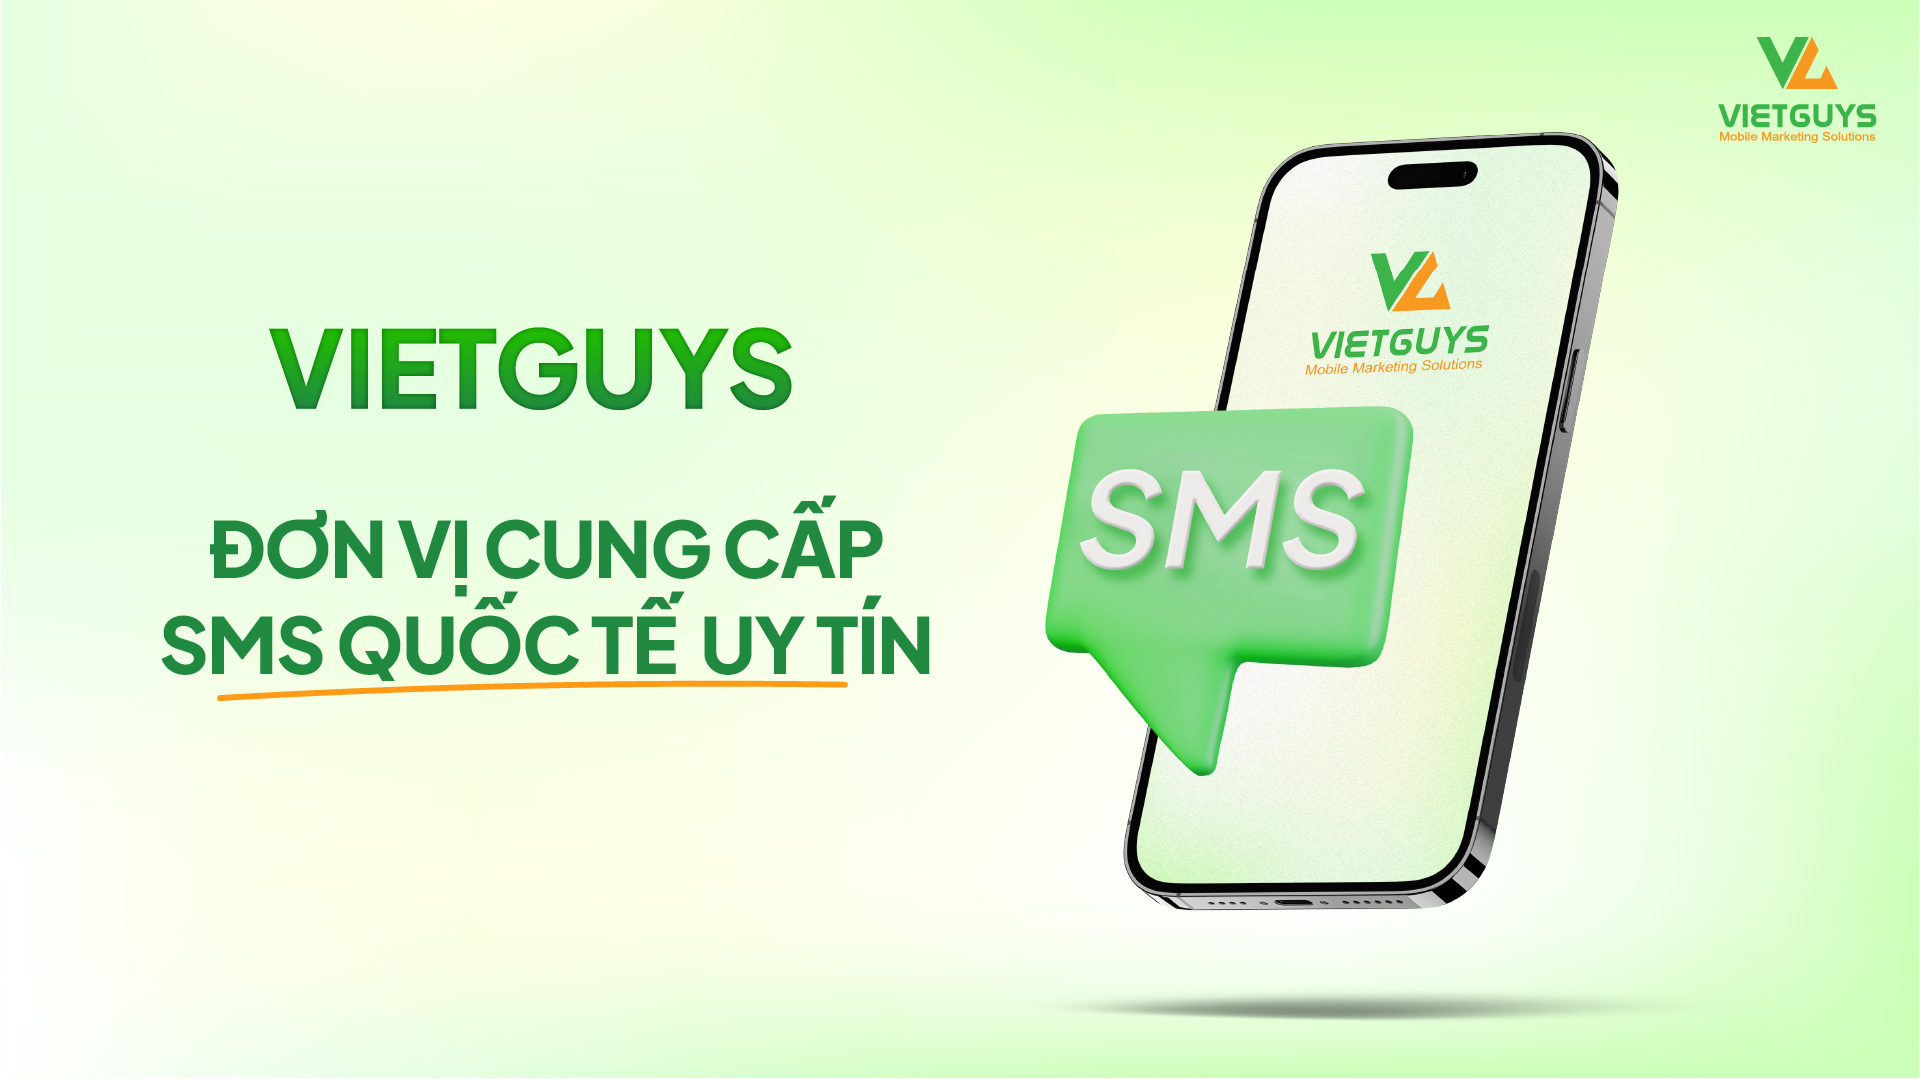 VietGuys đơn vị cung cấp dịch vụ tin nhắn SMS quốc tế.